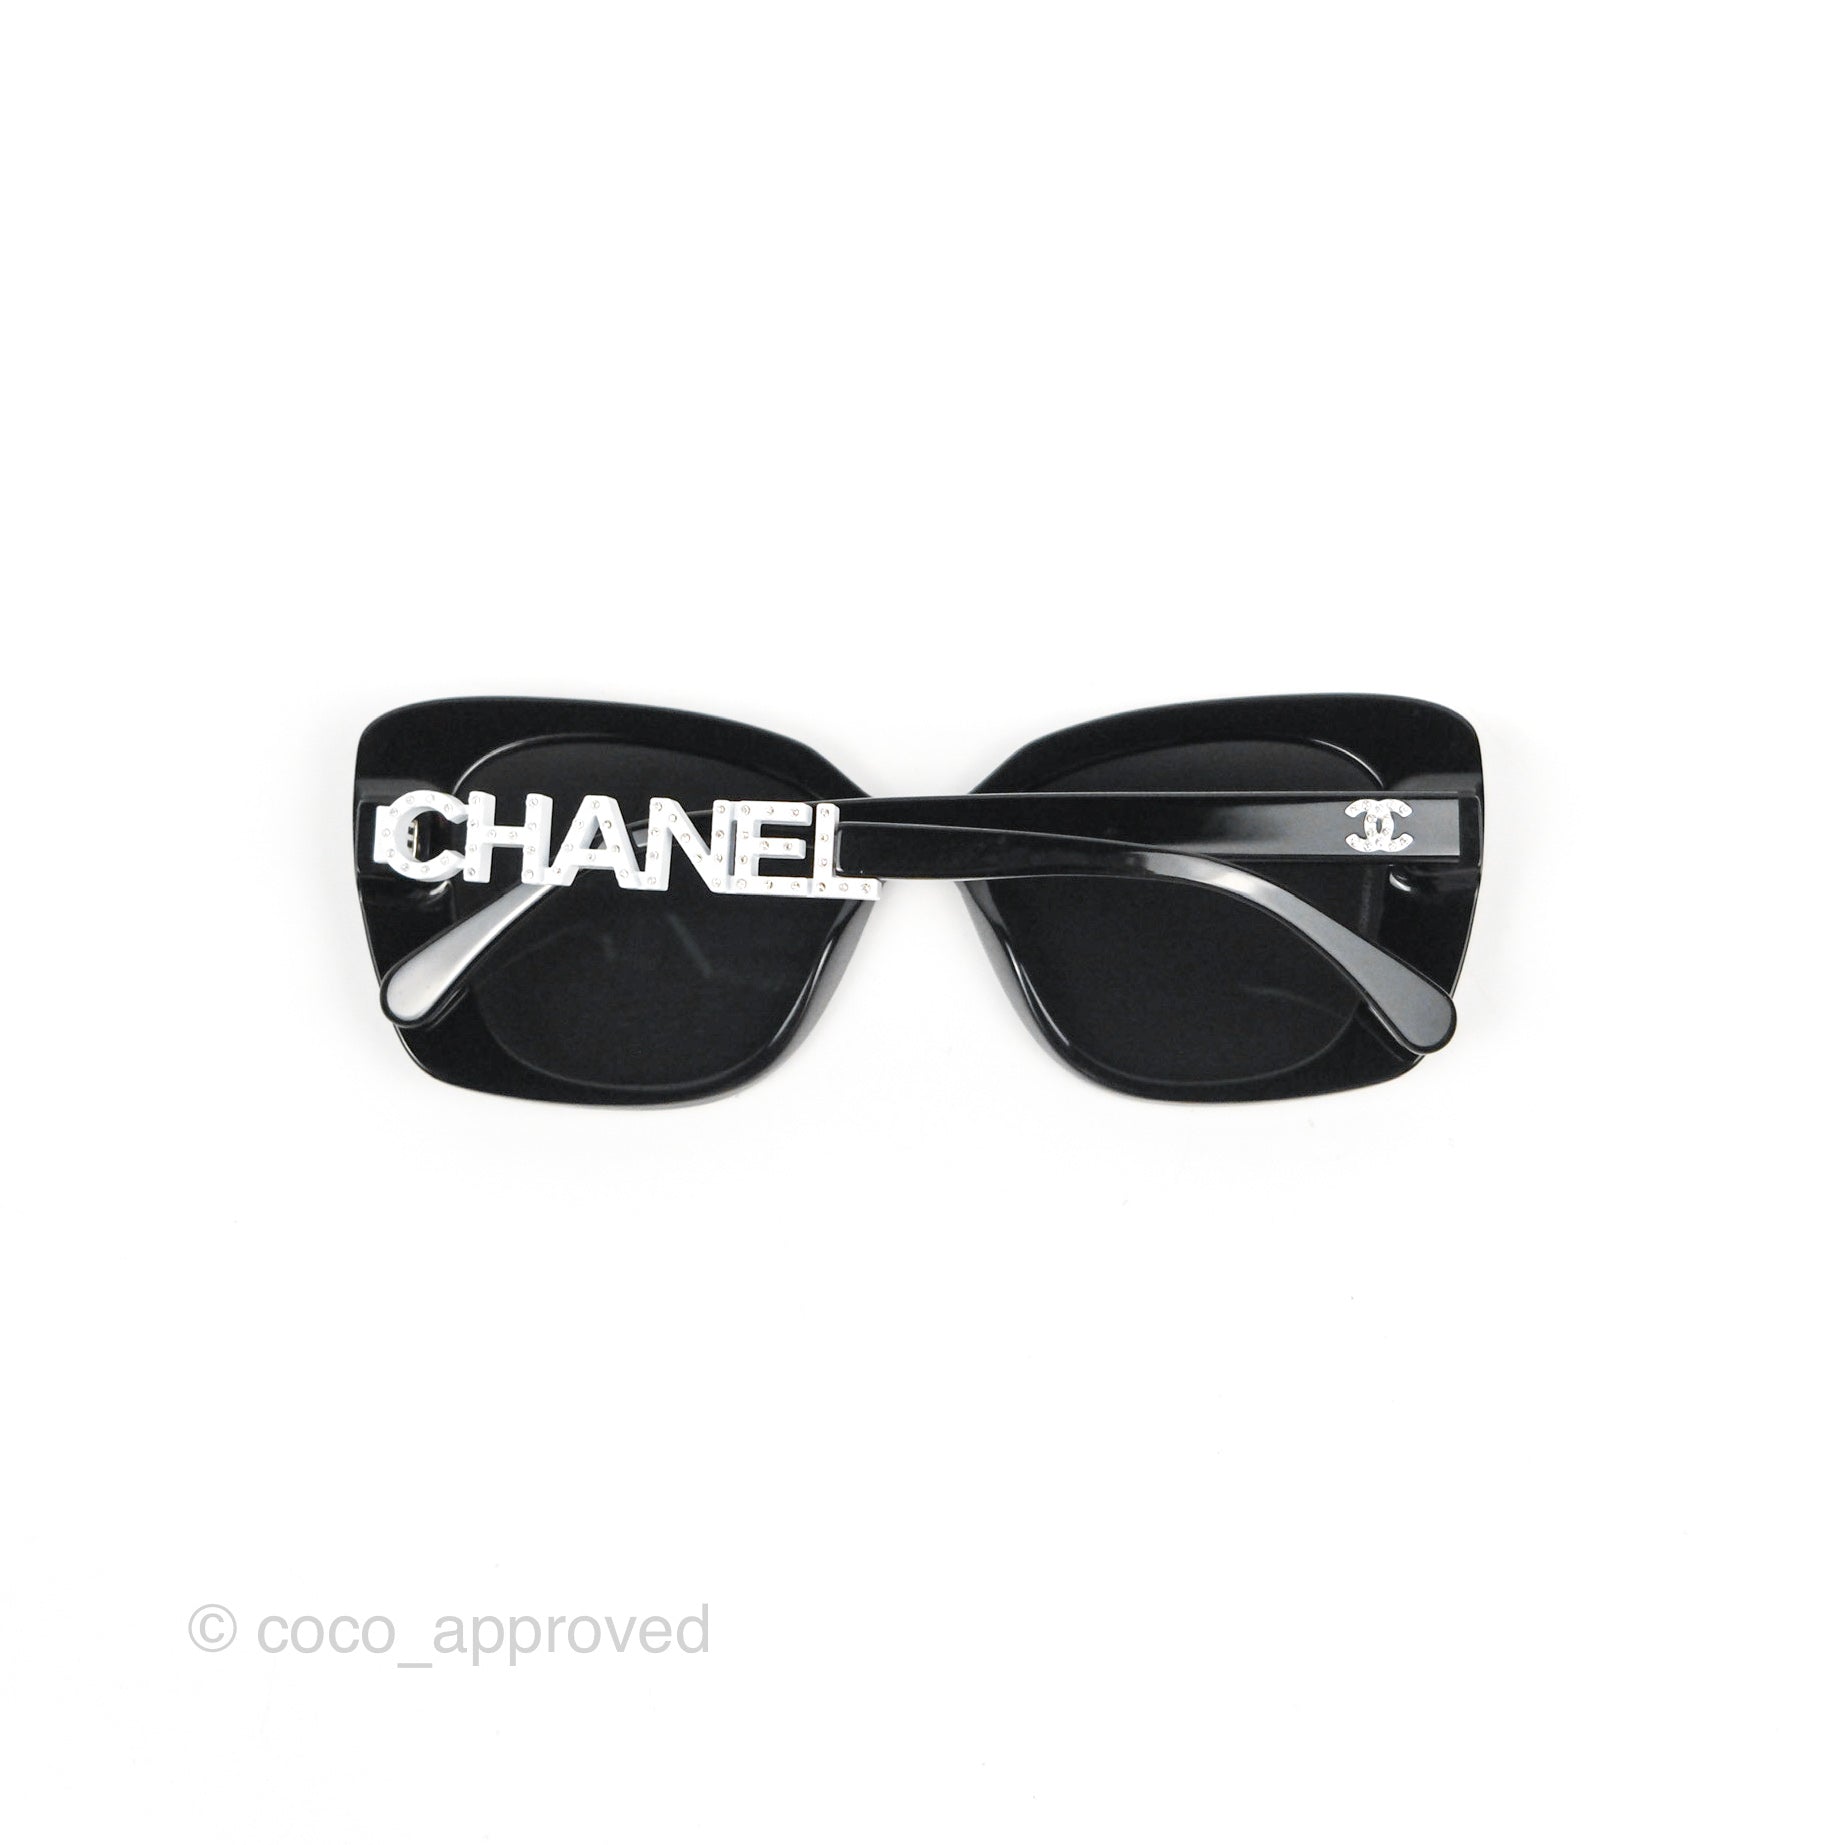 chanel sunglasses no frame